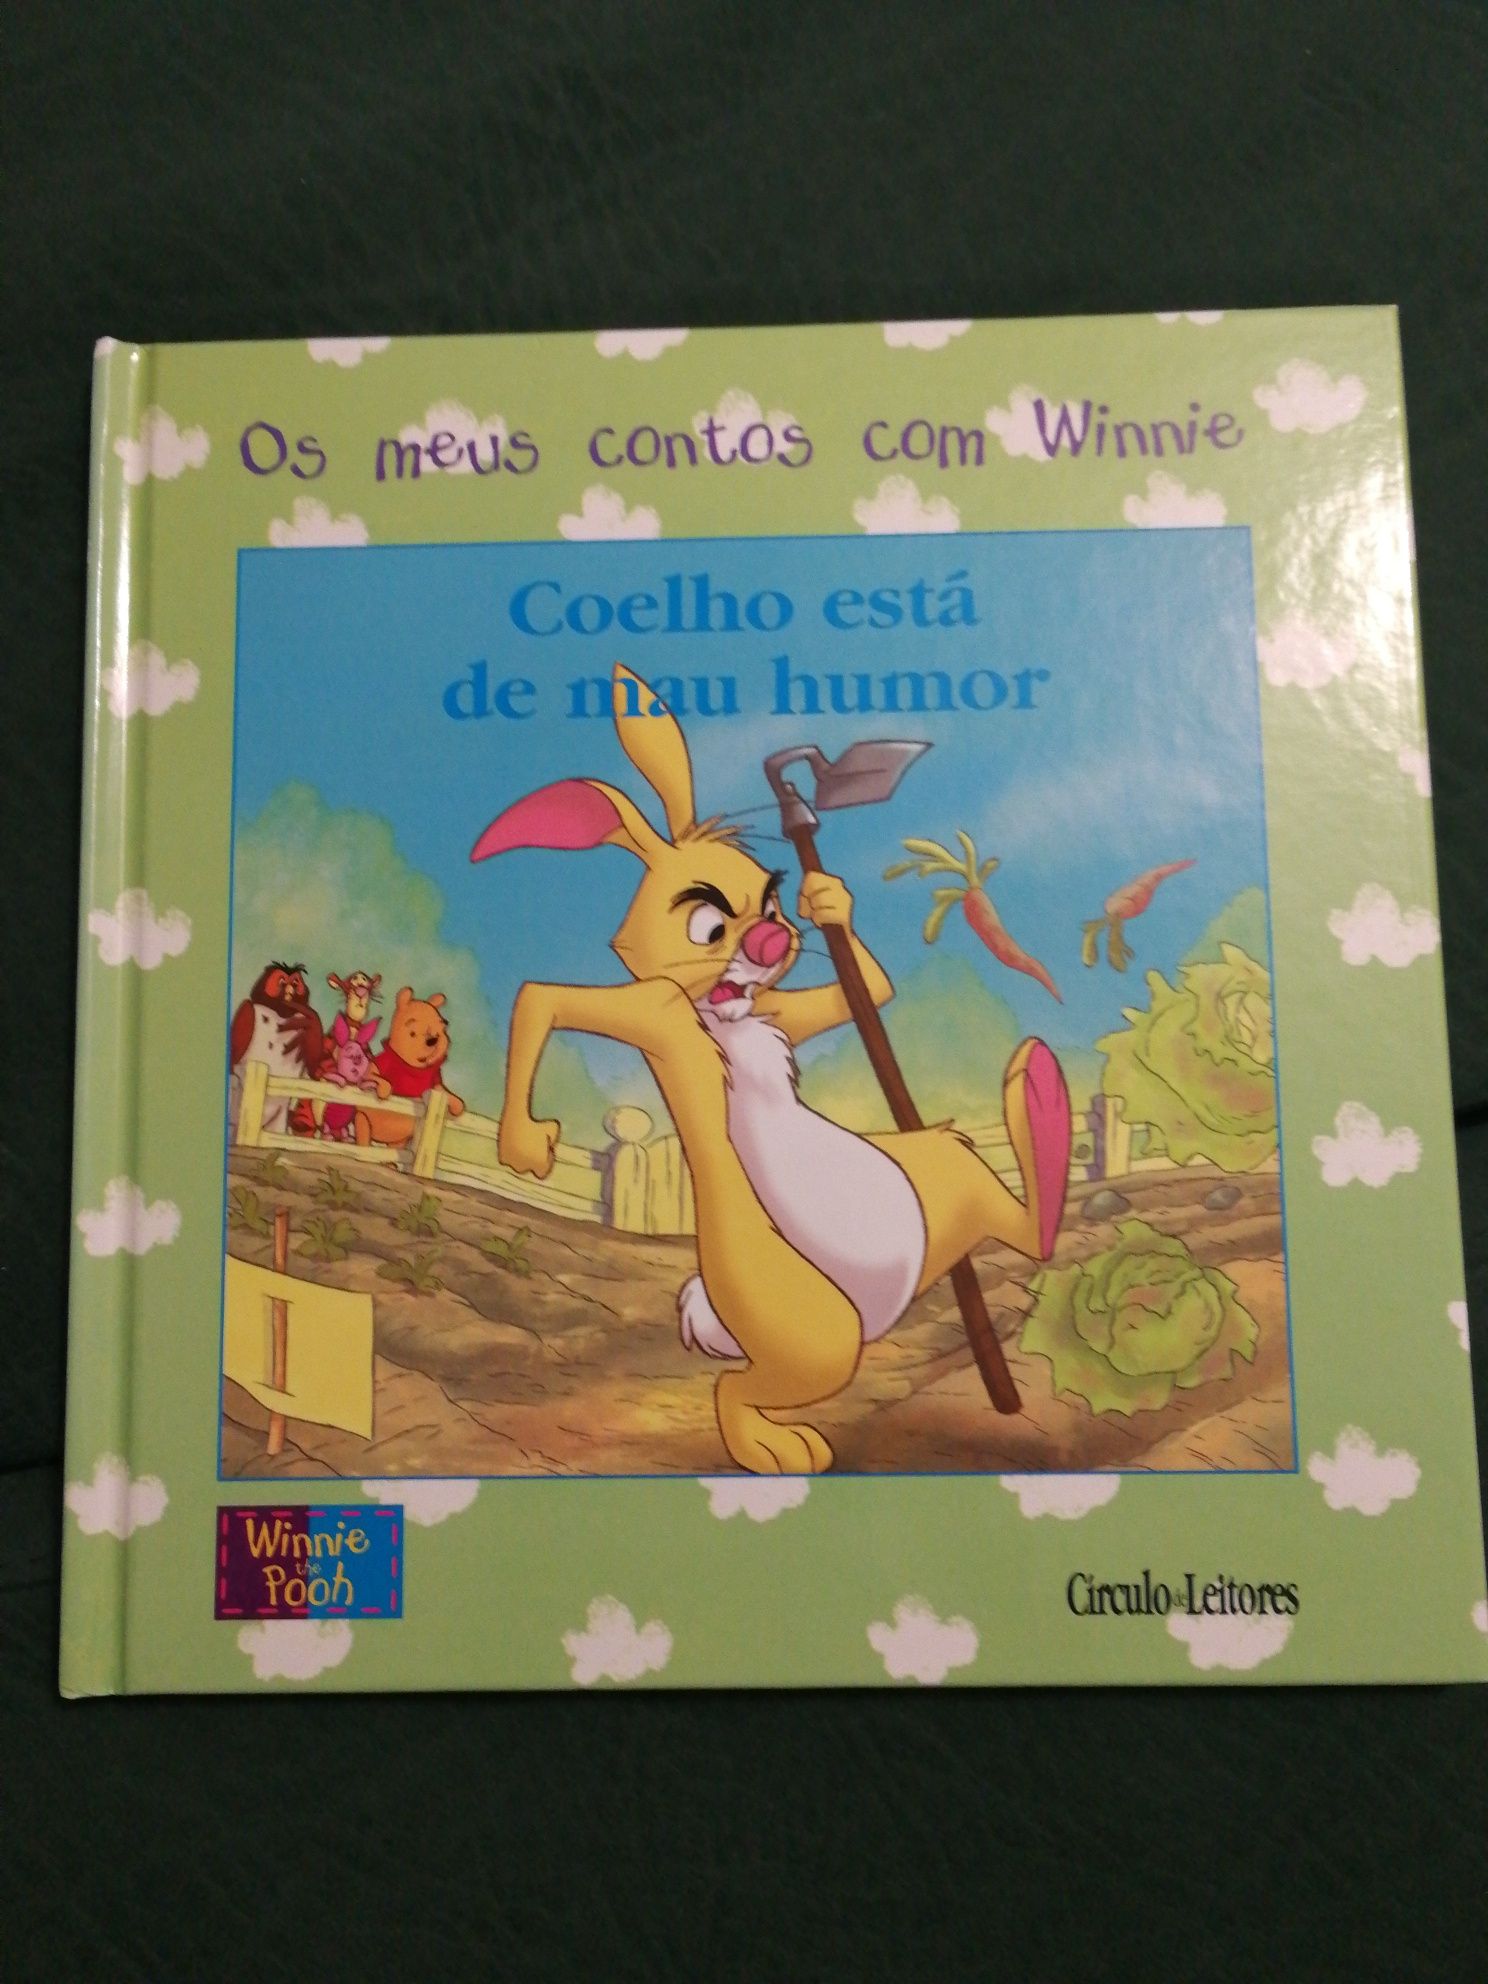 Livro Winnie the Pooh "Coelho está de mau humor"